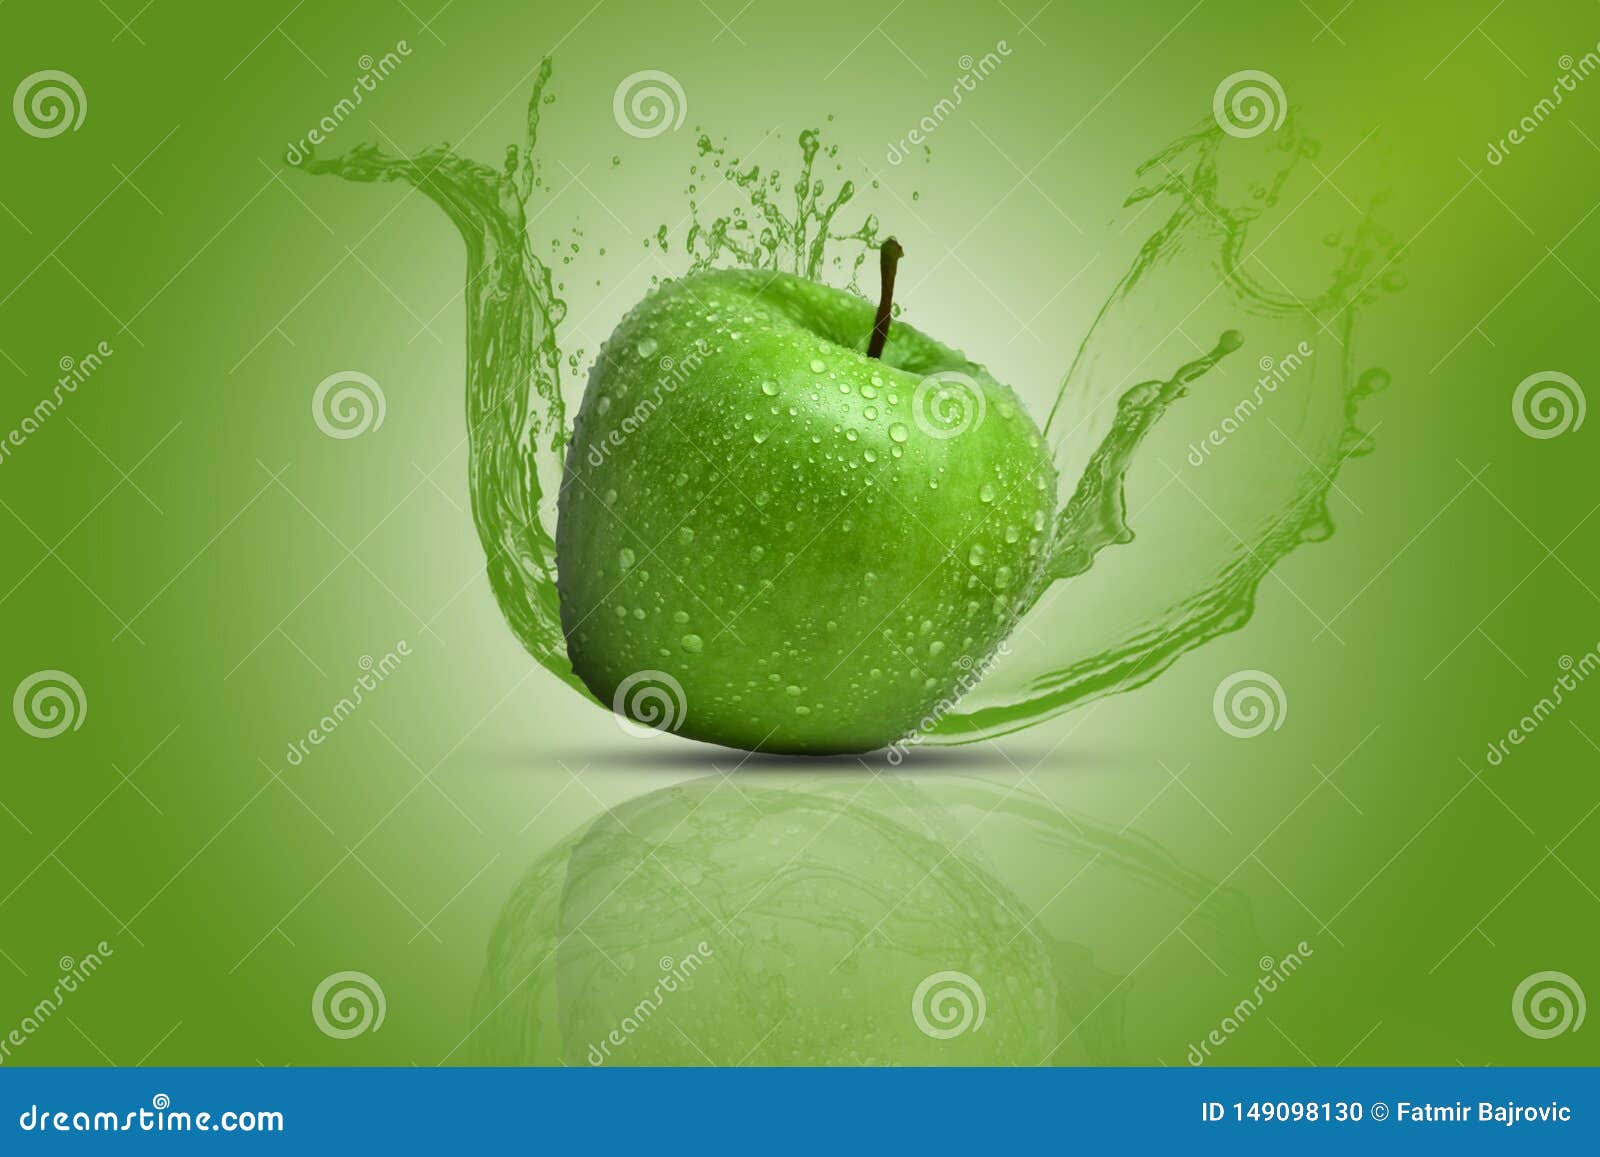 Gây ấn tượng mạnh với động thái của giọt nước khi chạm vào quả táo xanh rực rỡ trong tấm hình này. Những vệt nước phun tung xung quanh quả táo mang đến cảm giác sảng khoái và tươi mới cho mọi người. Hãy cùng thưởng thức!